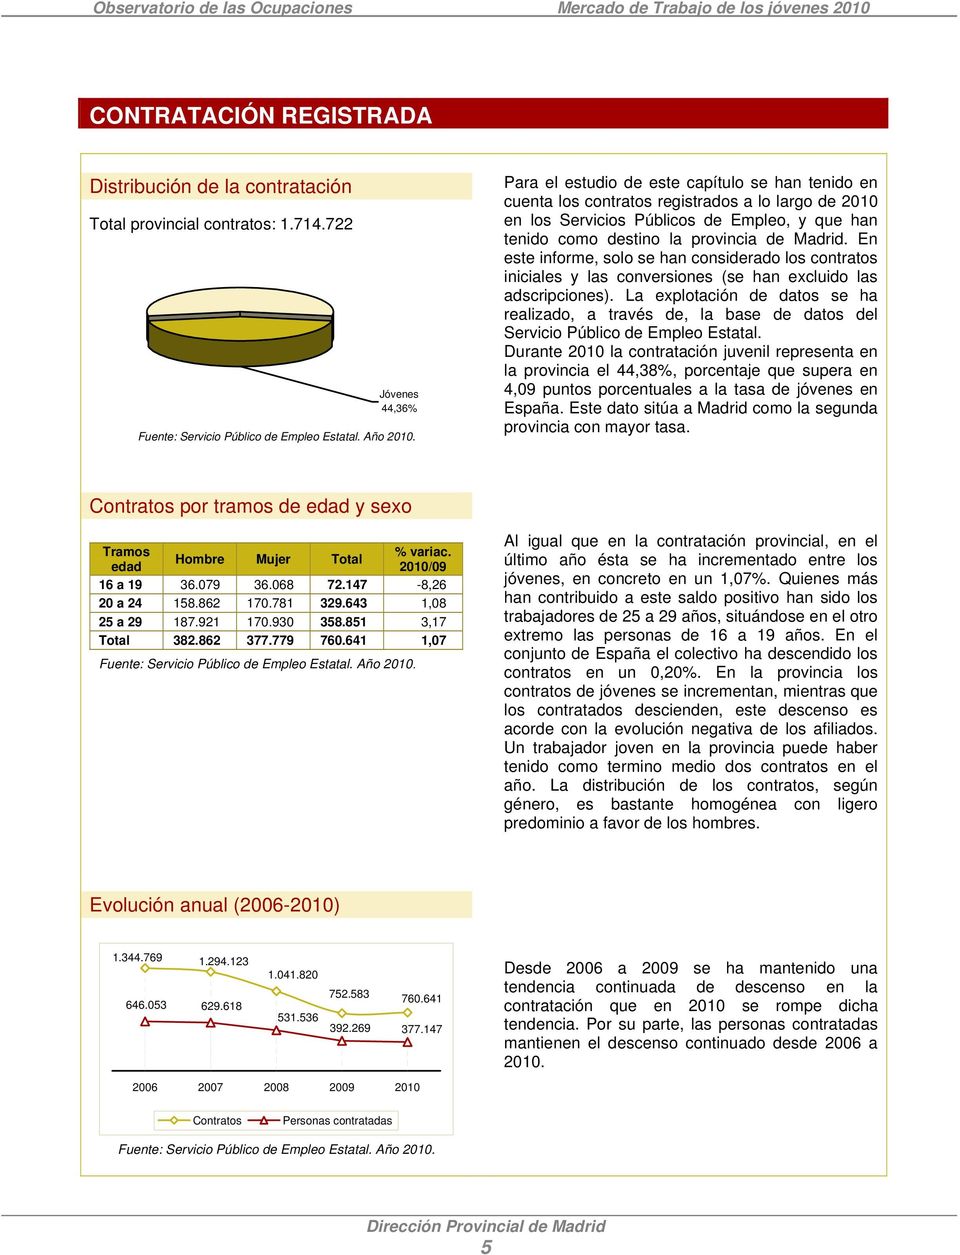 provincia de Madrid. En este informe, solo se han considerado los contratos iniciales y las conversiones (se han excluido las adscripciones).